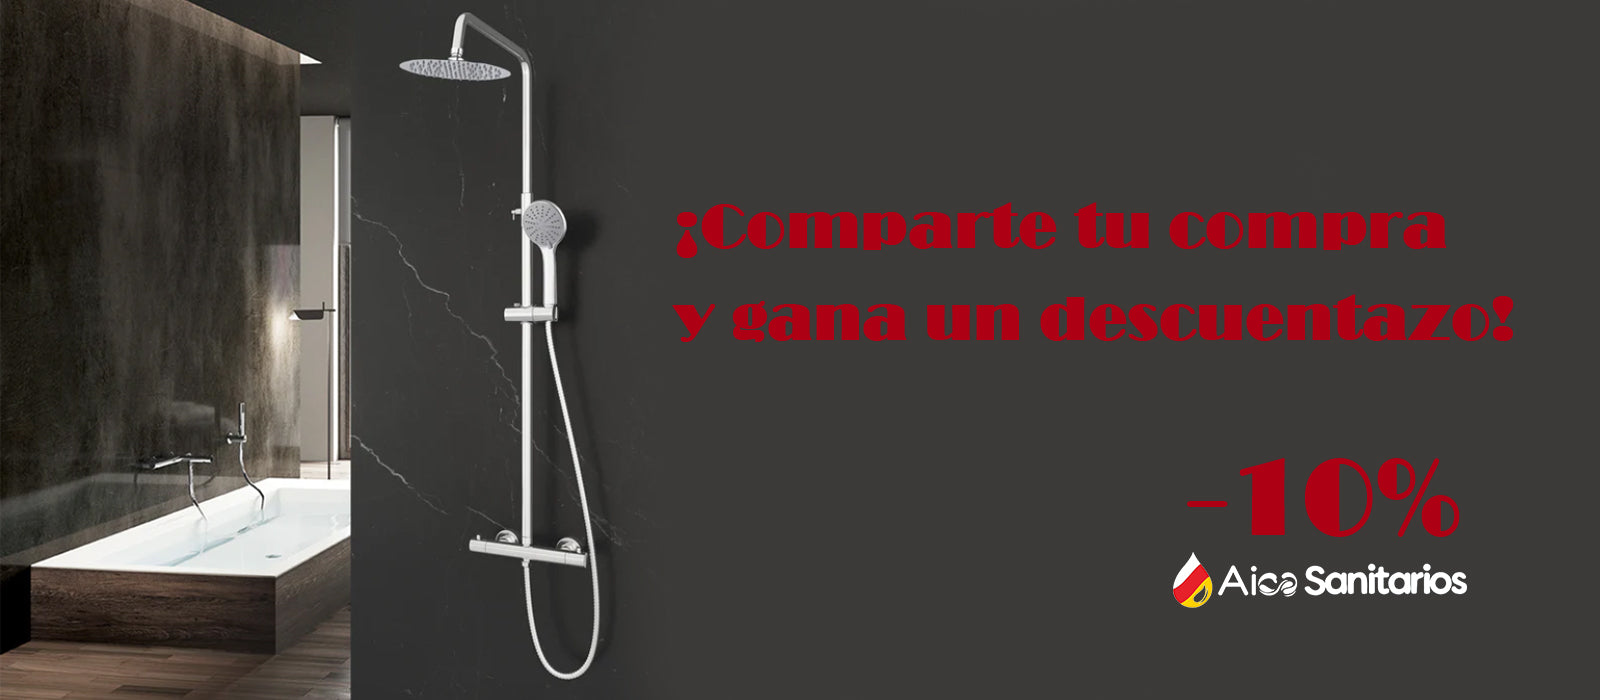 mamparadeducha #baño - Aica Sanitarios Mampara de Ducha